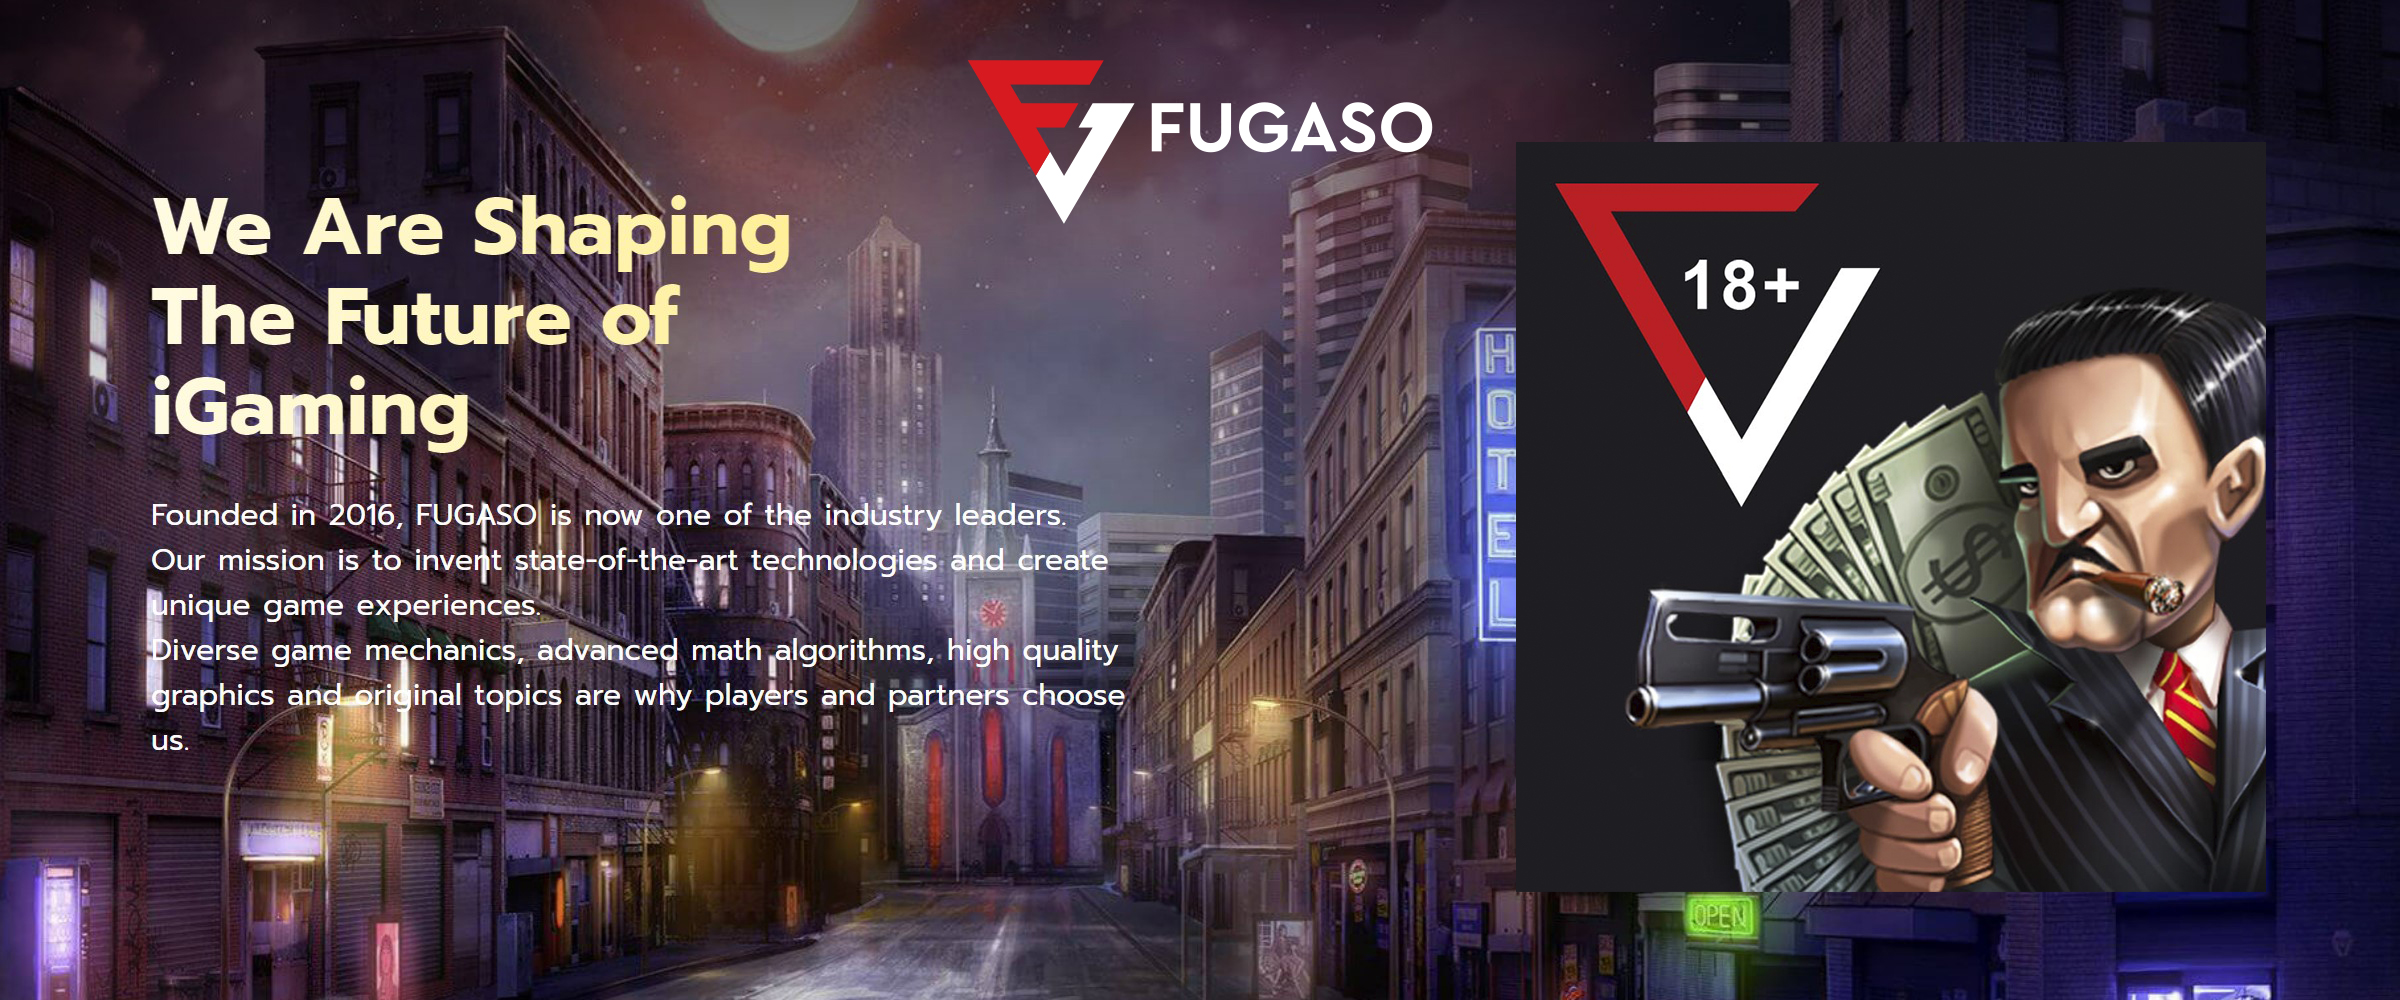 Fugaso Game provider